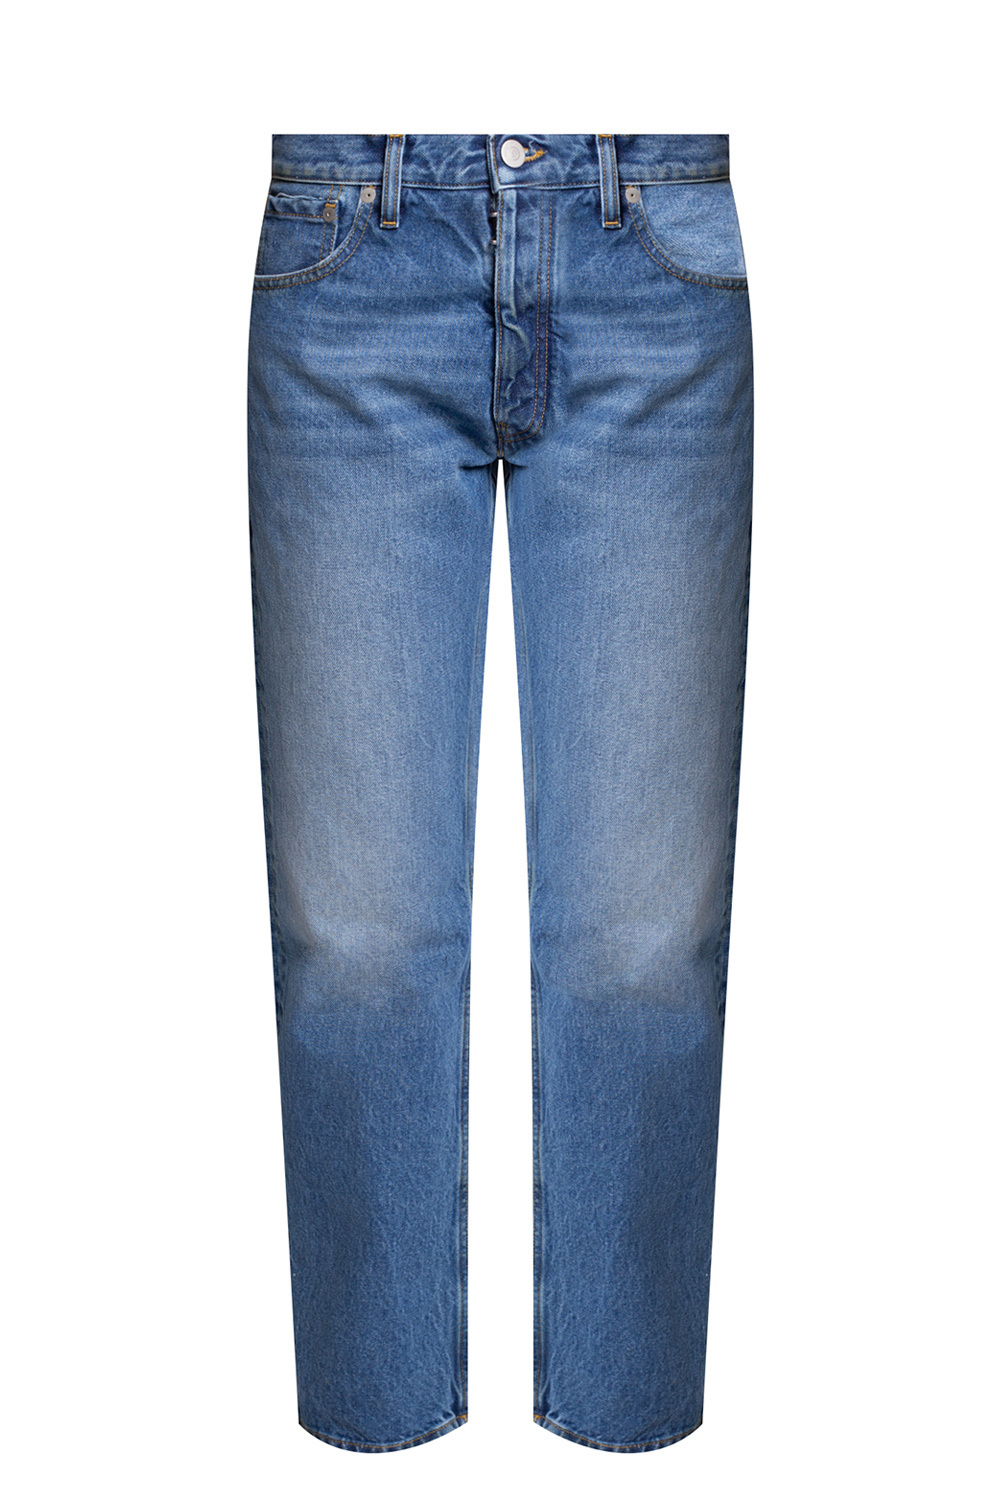 EMPORIO ARMANI DRESS WITH LOGO - Distressed jeans Maison Margiela -  GenesinlifeShops Bahamas